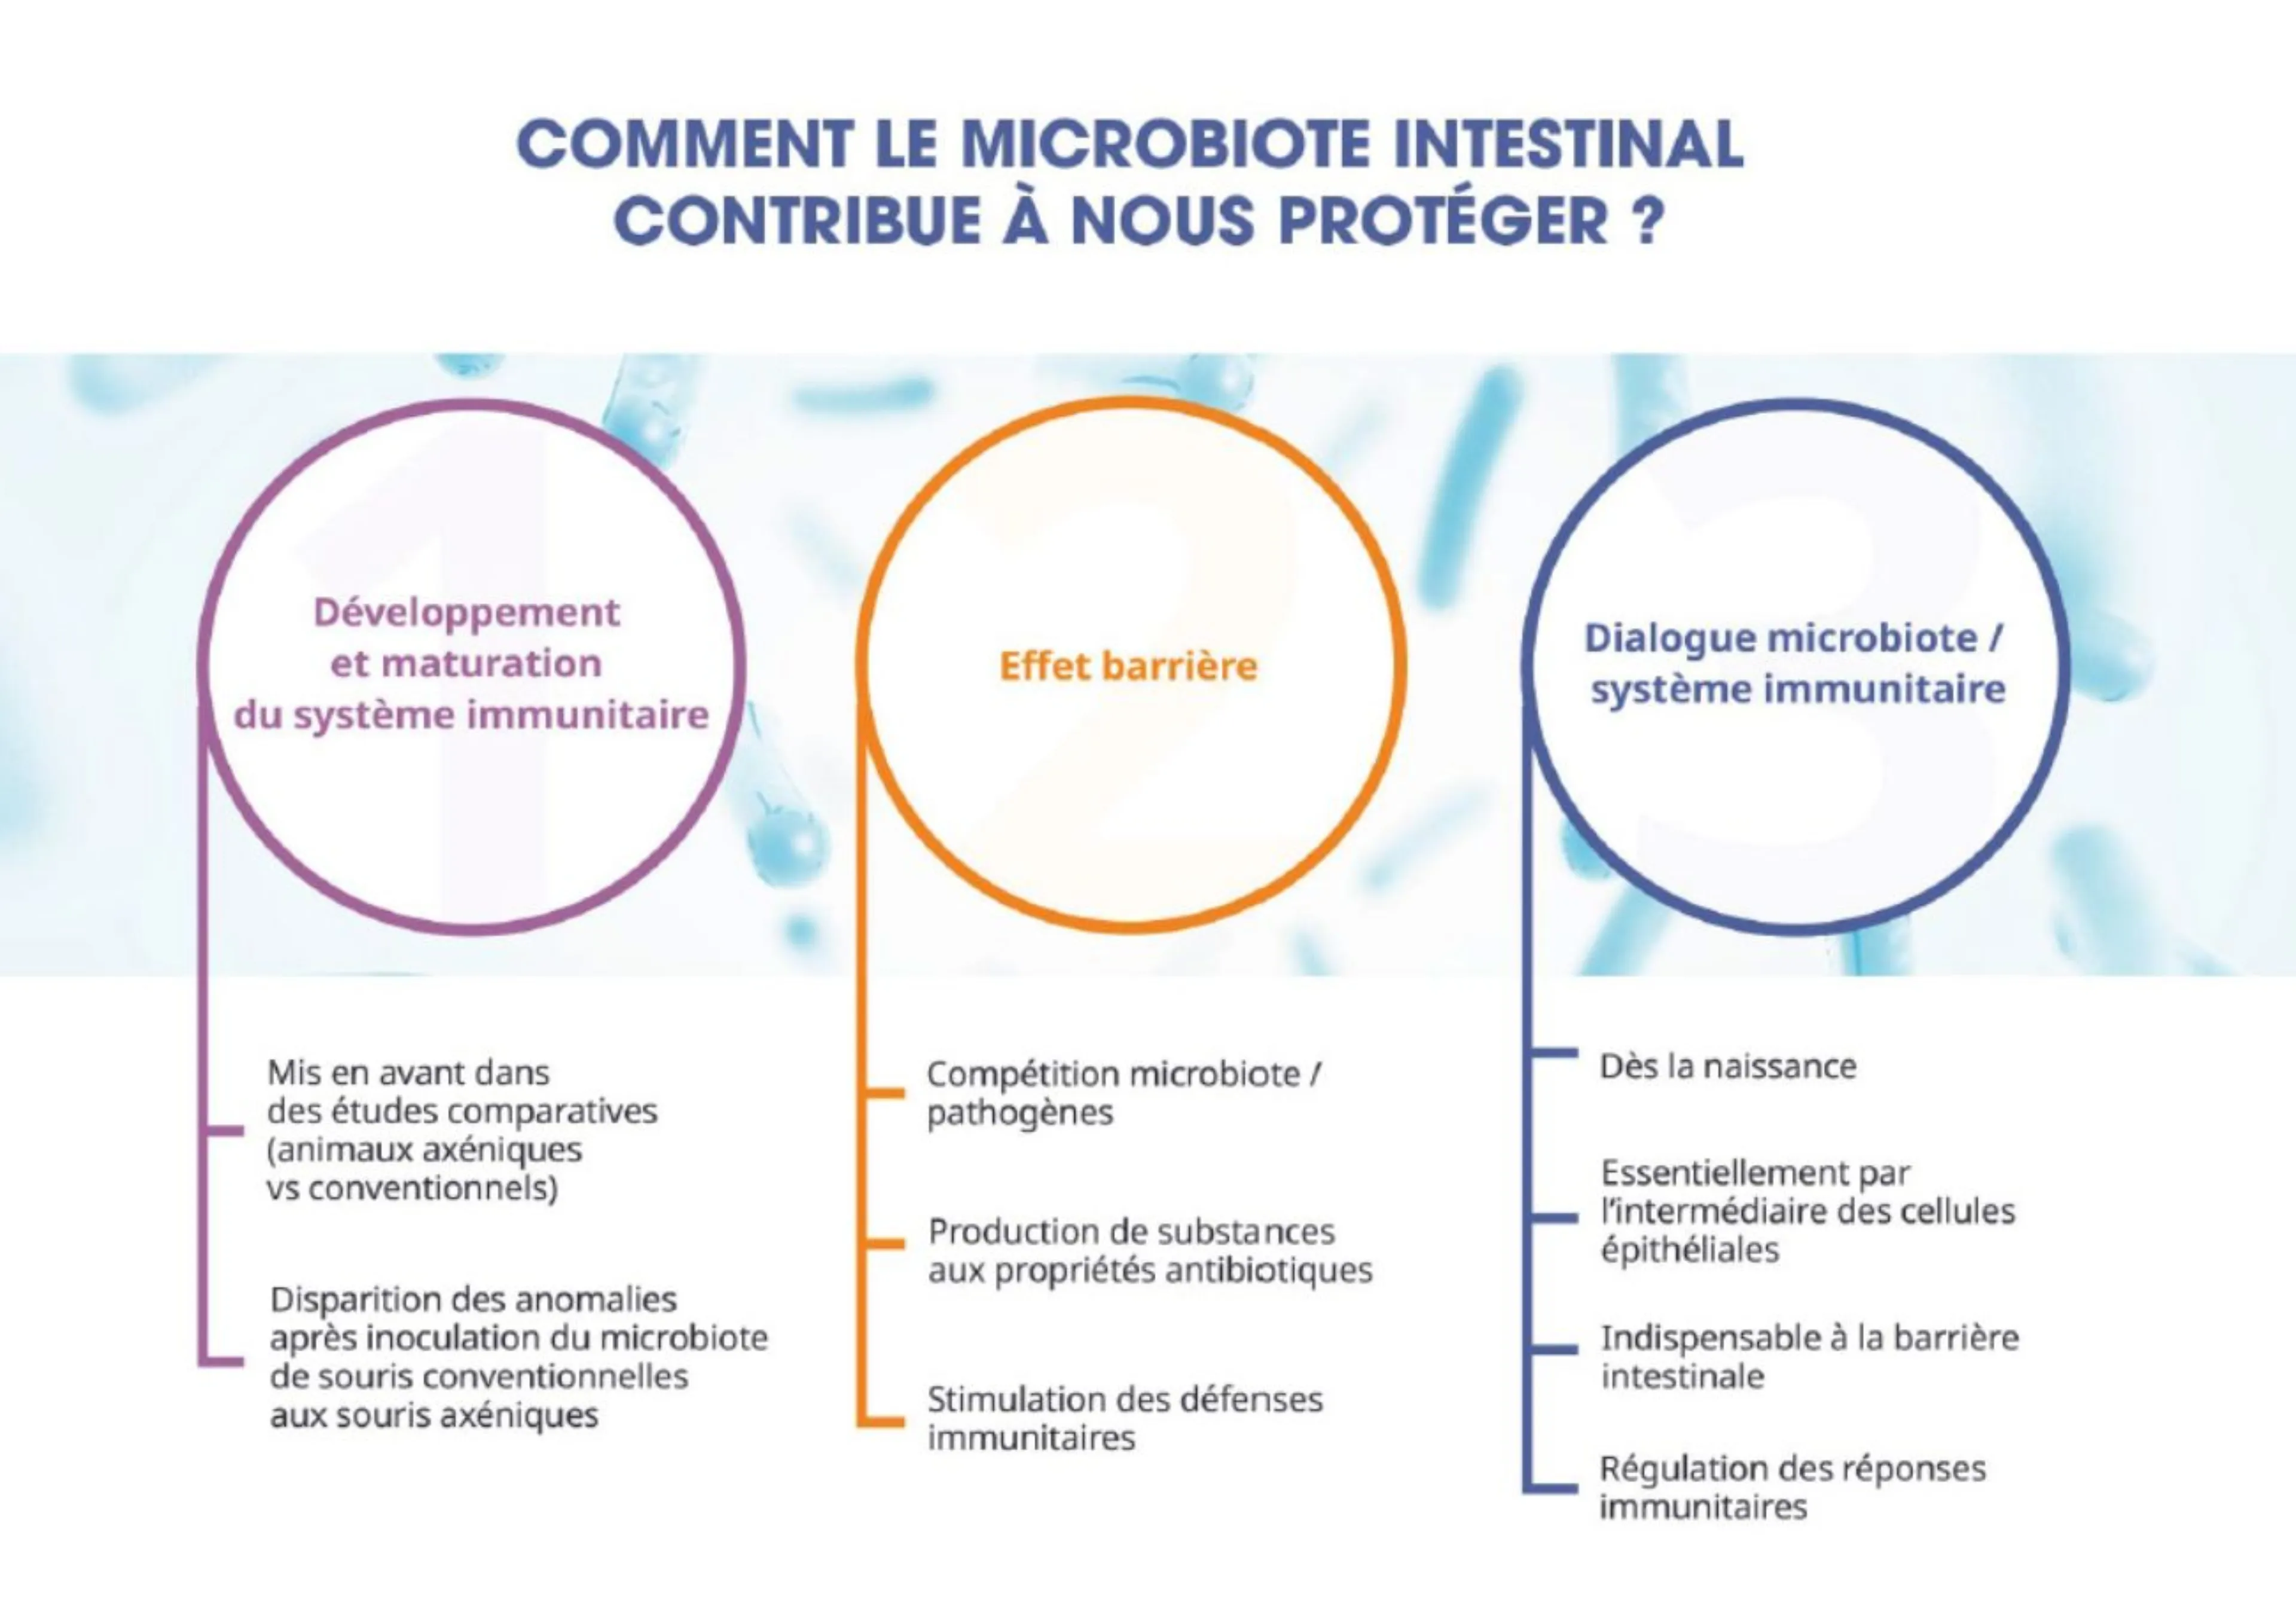 Schéma récapitulatif des rôles du microbiote intestinal